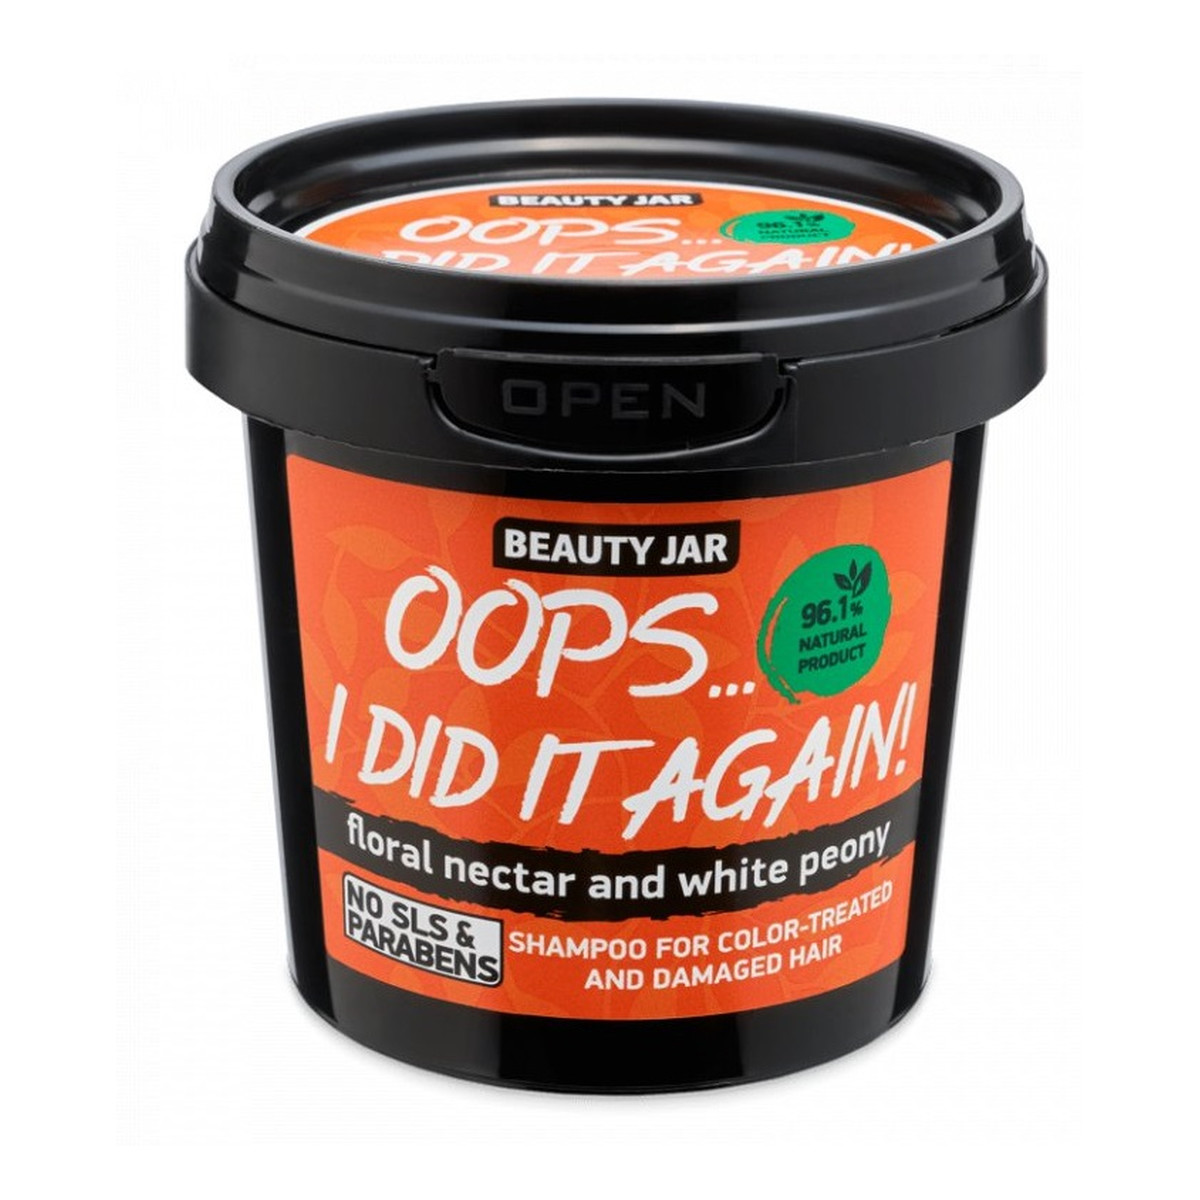 Beauty Jar Oops… i did it again! szampon do włosów farbowanych 150g